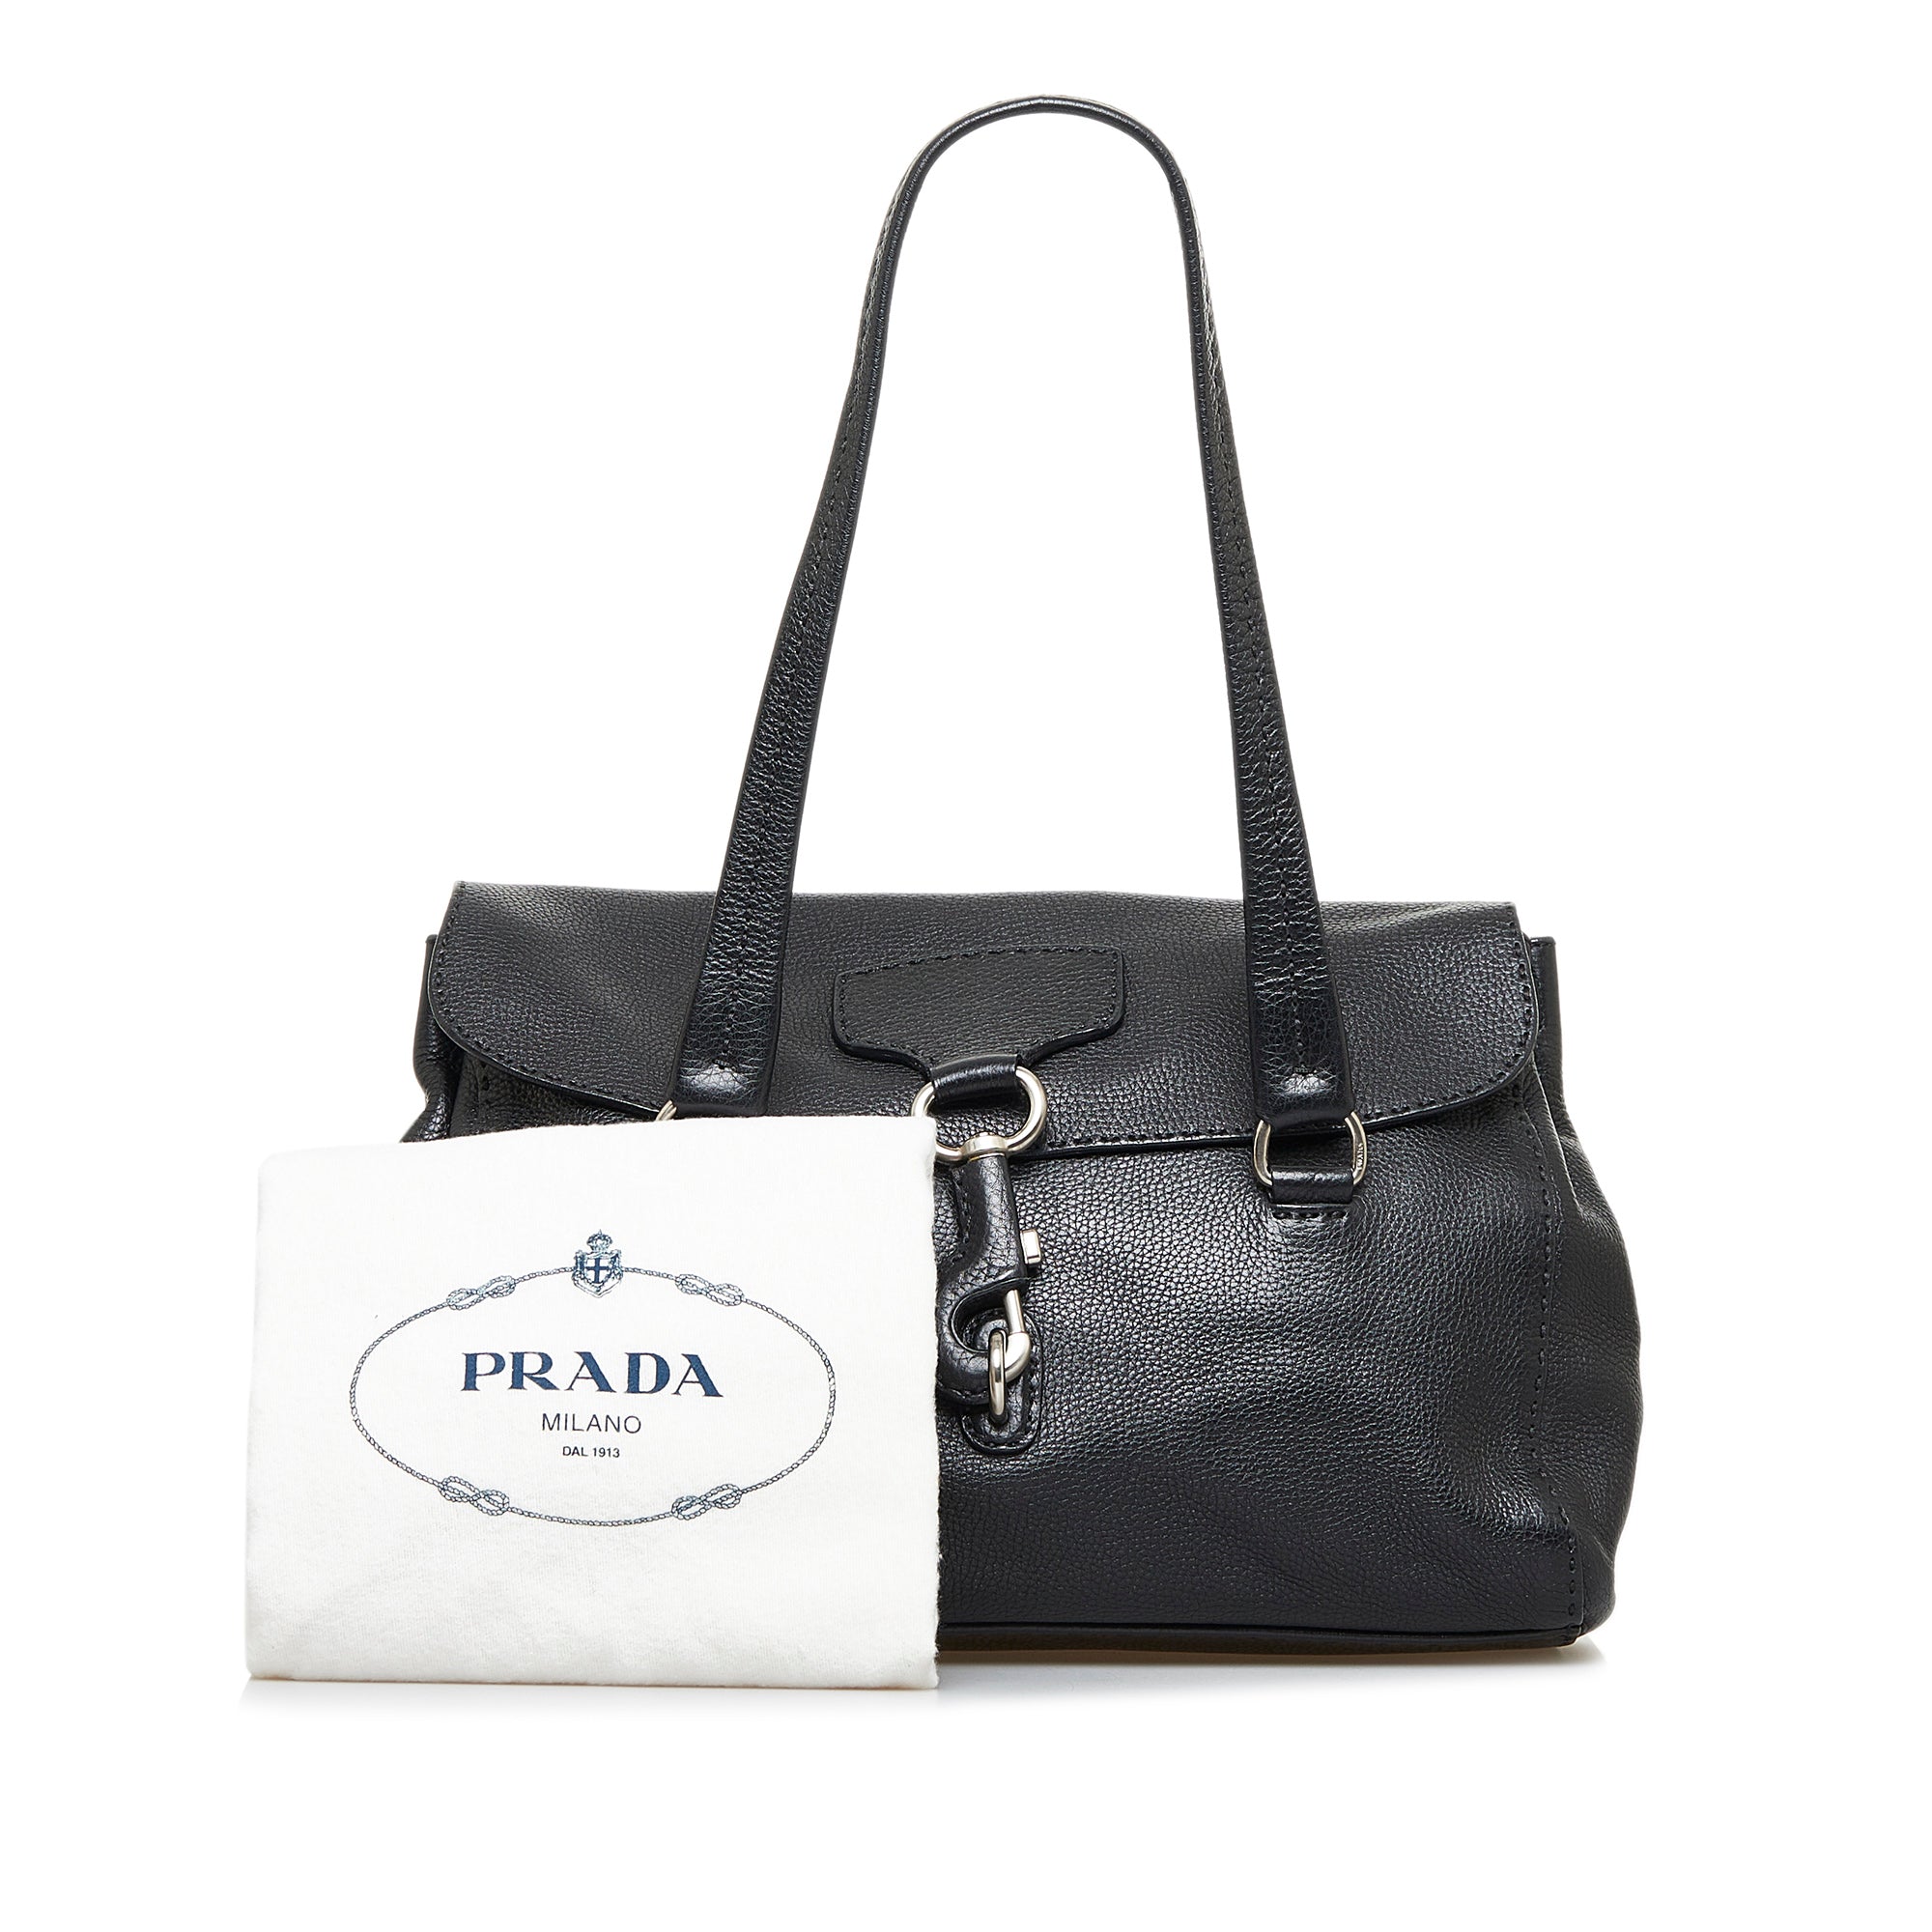 Prada Vintage - Leather Shoulder Bag - Black - Leather Handbag